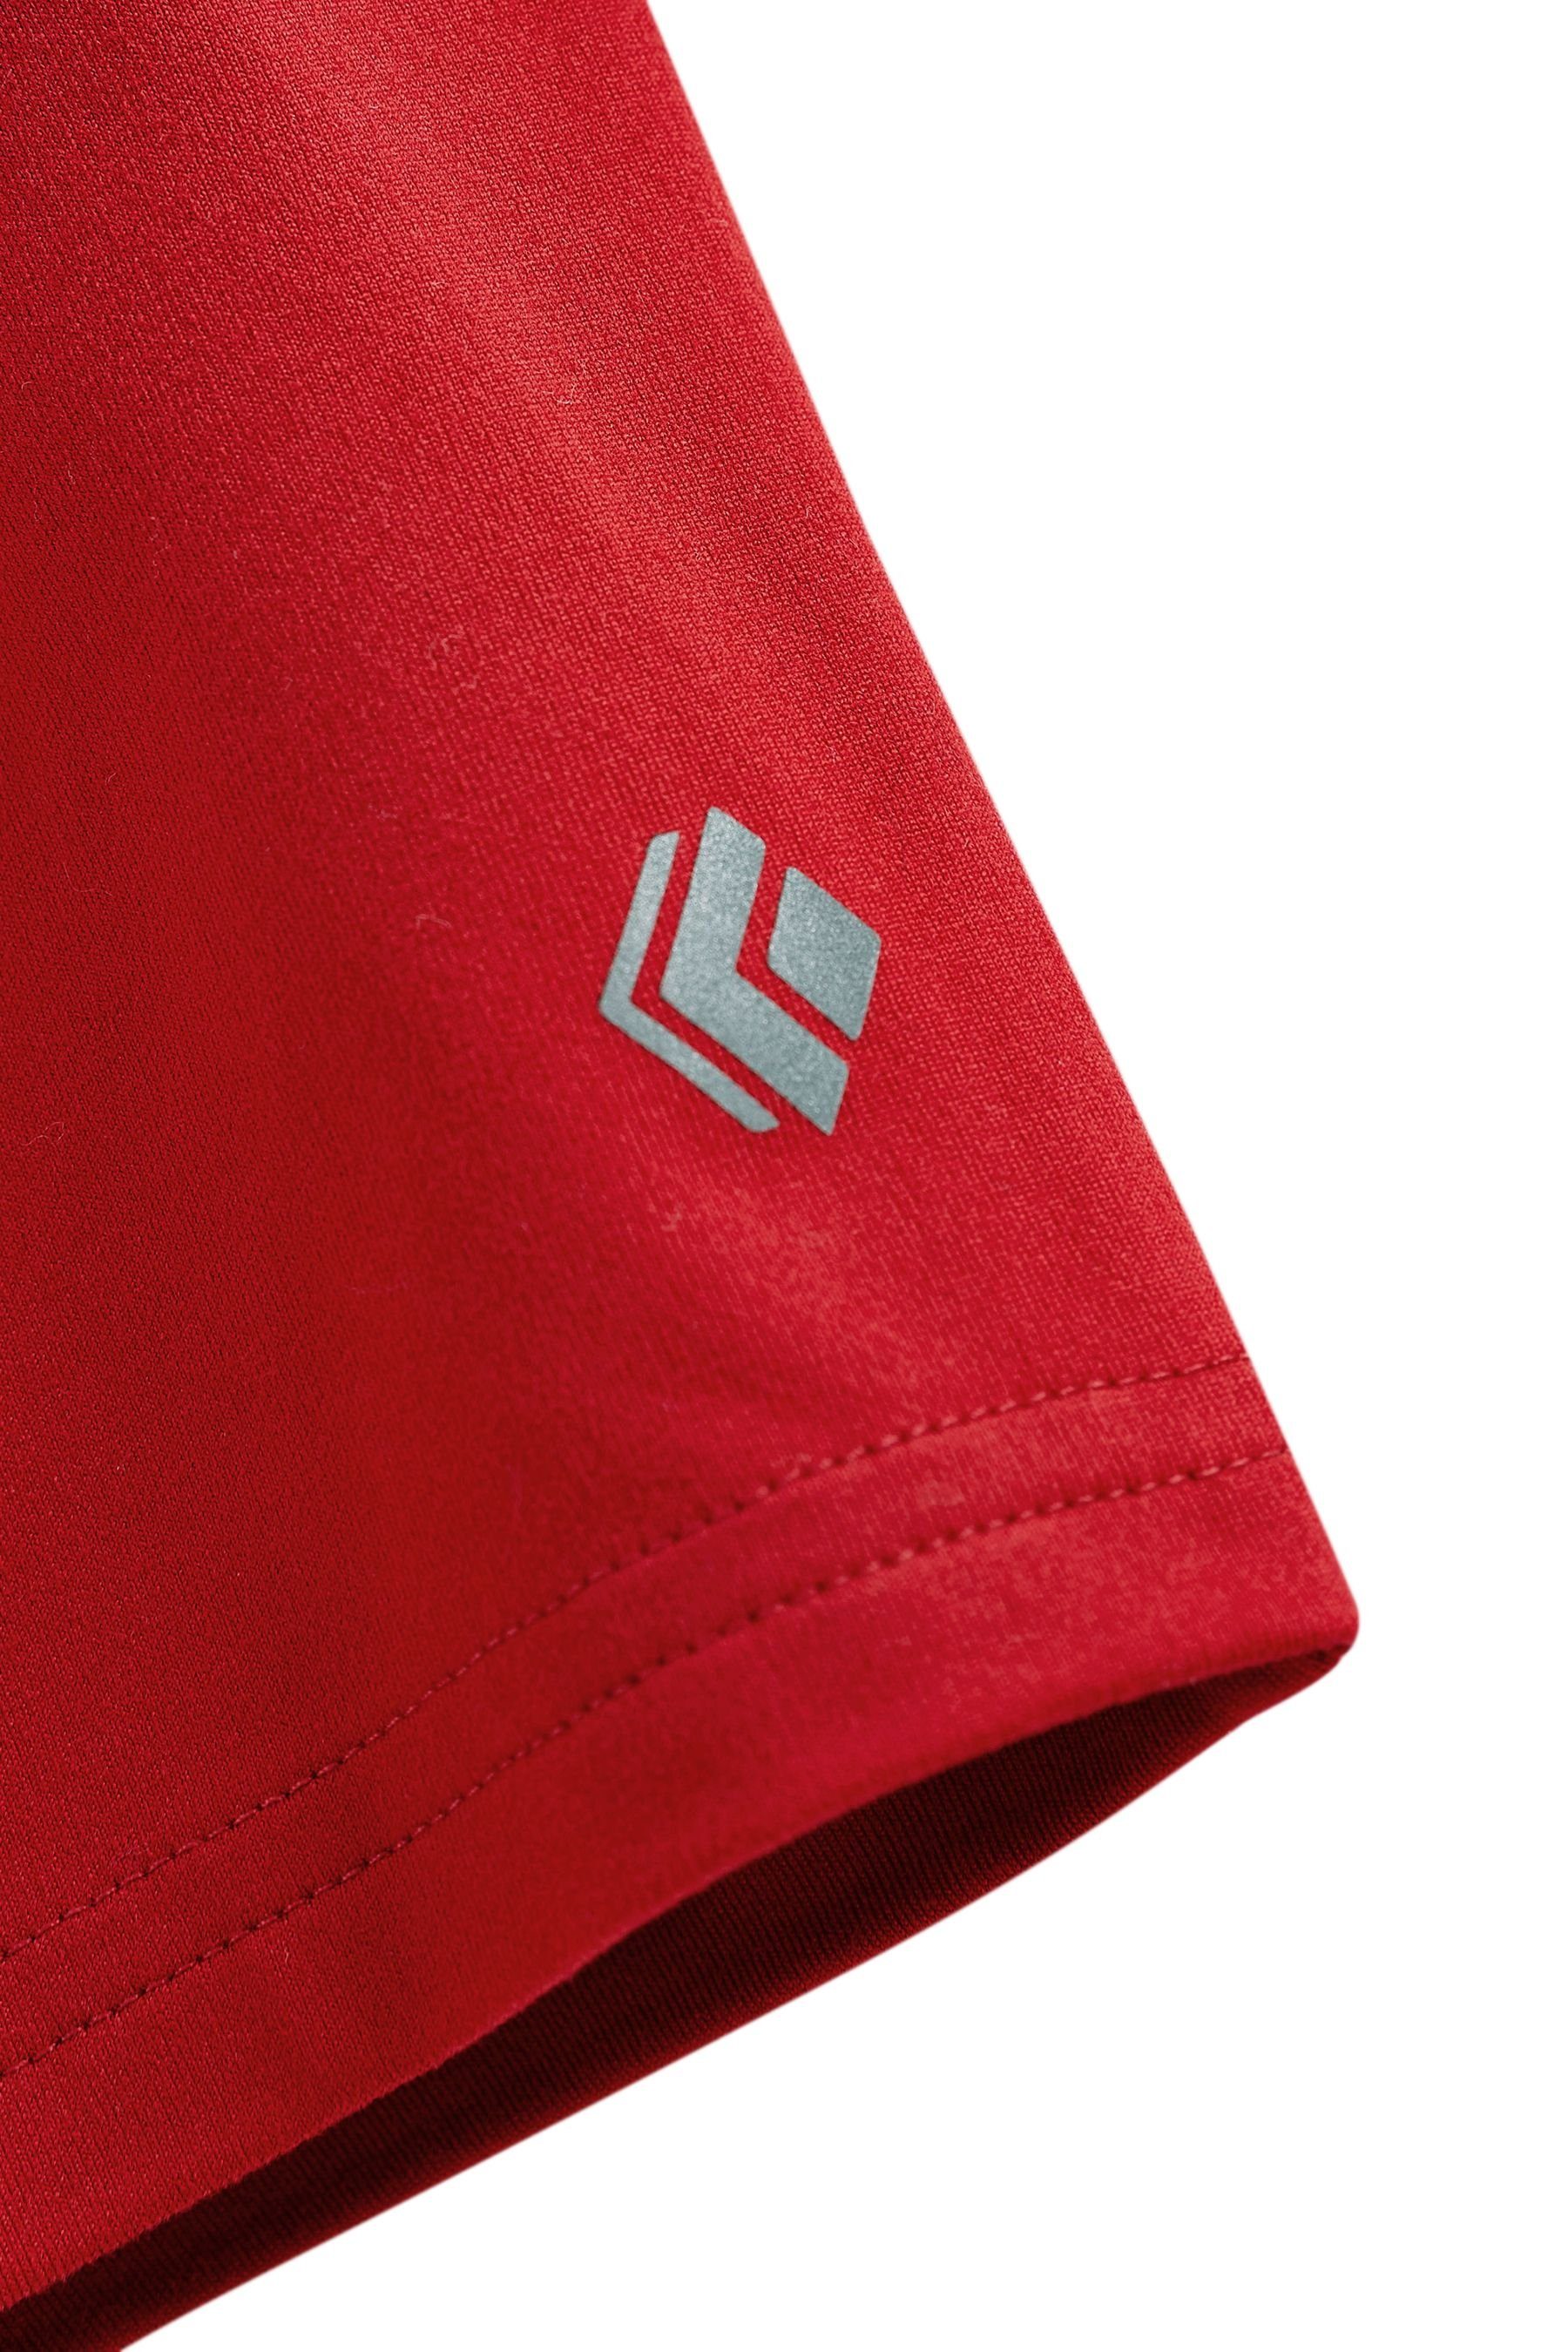 Next Sweatshorts Leichte 1er-Pack (1-tlg) - Sport-Shorts Red Burgundy